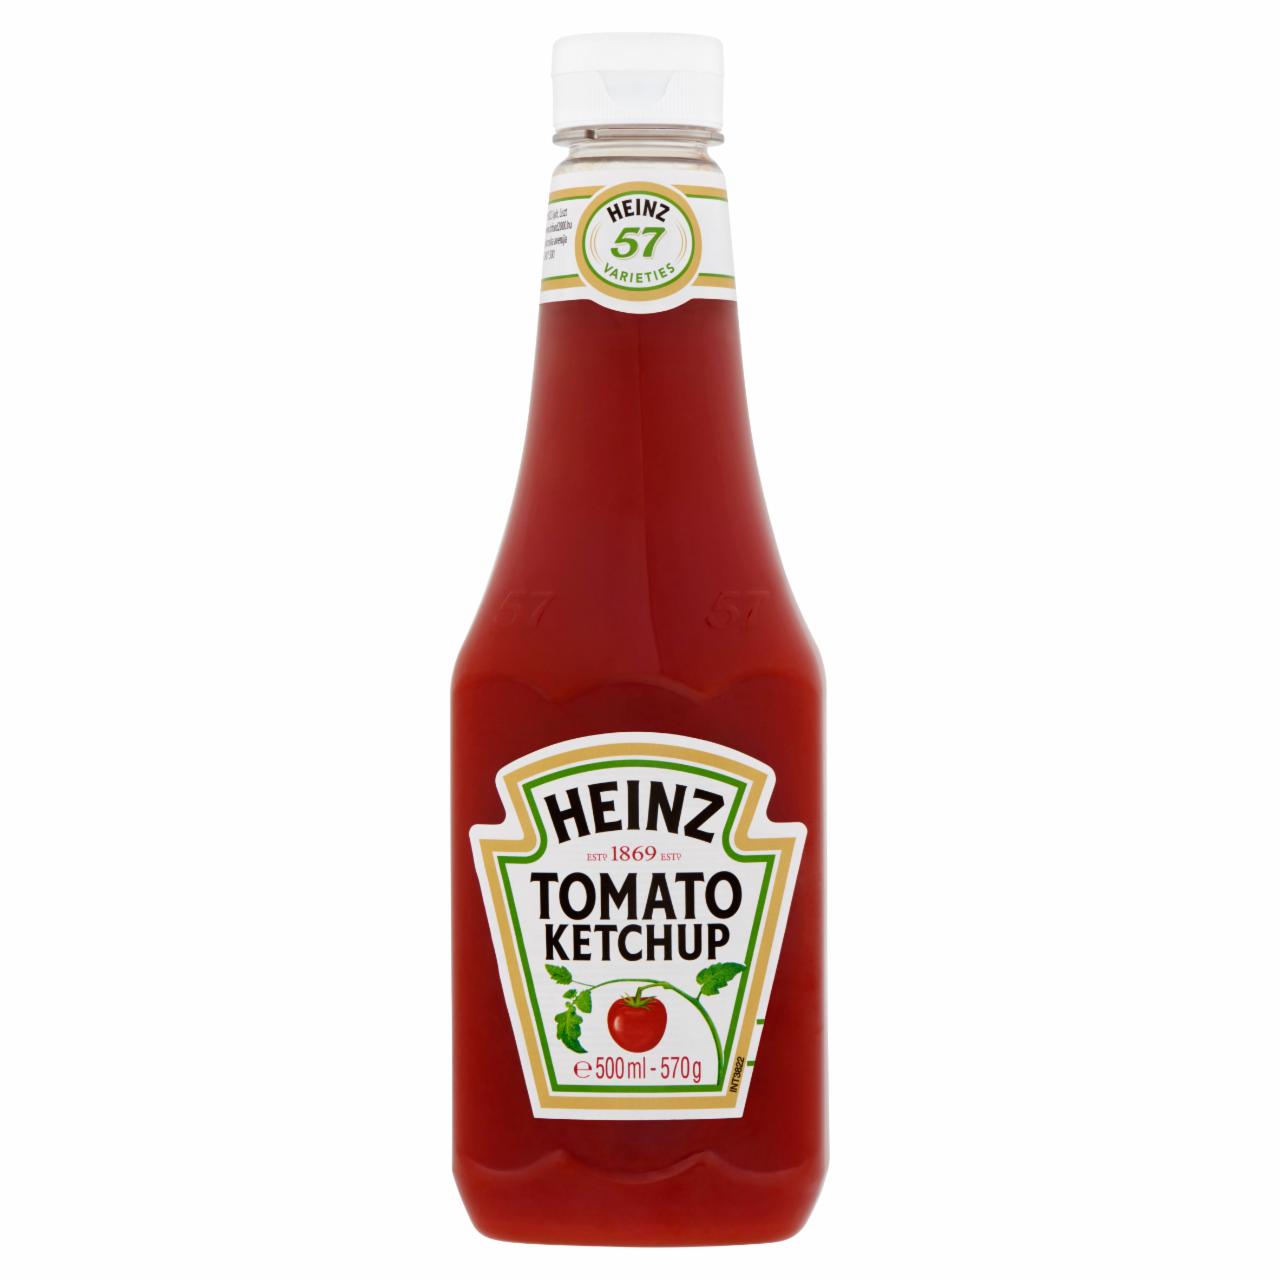 Képek - Heinz Tomato ketchup 570 g